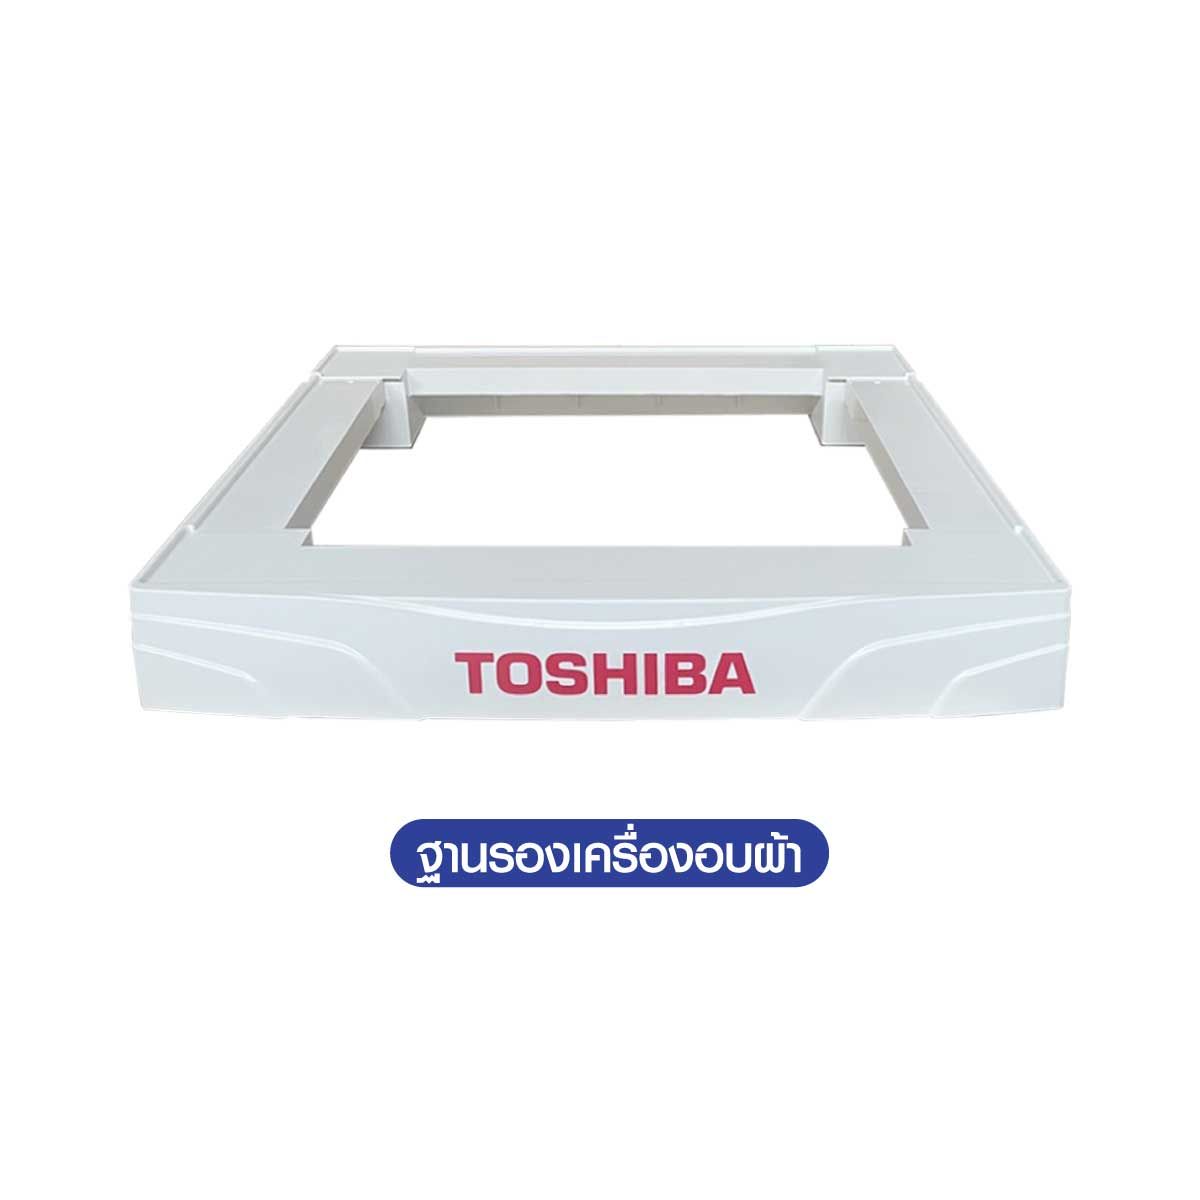 Toshiba เครื่องอบผ้าฝาหน้า ขนาด 7 kg. รุ่น TDH80SET